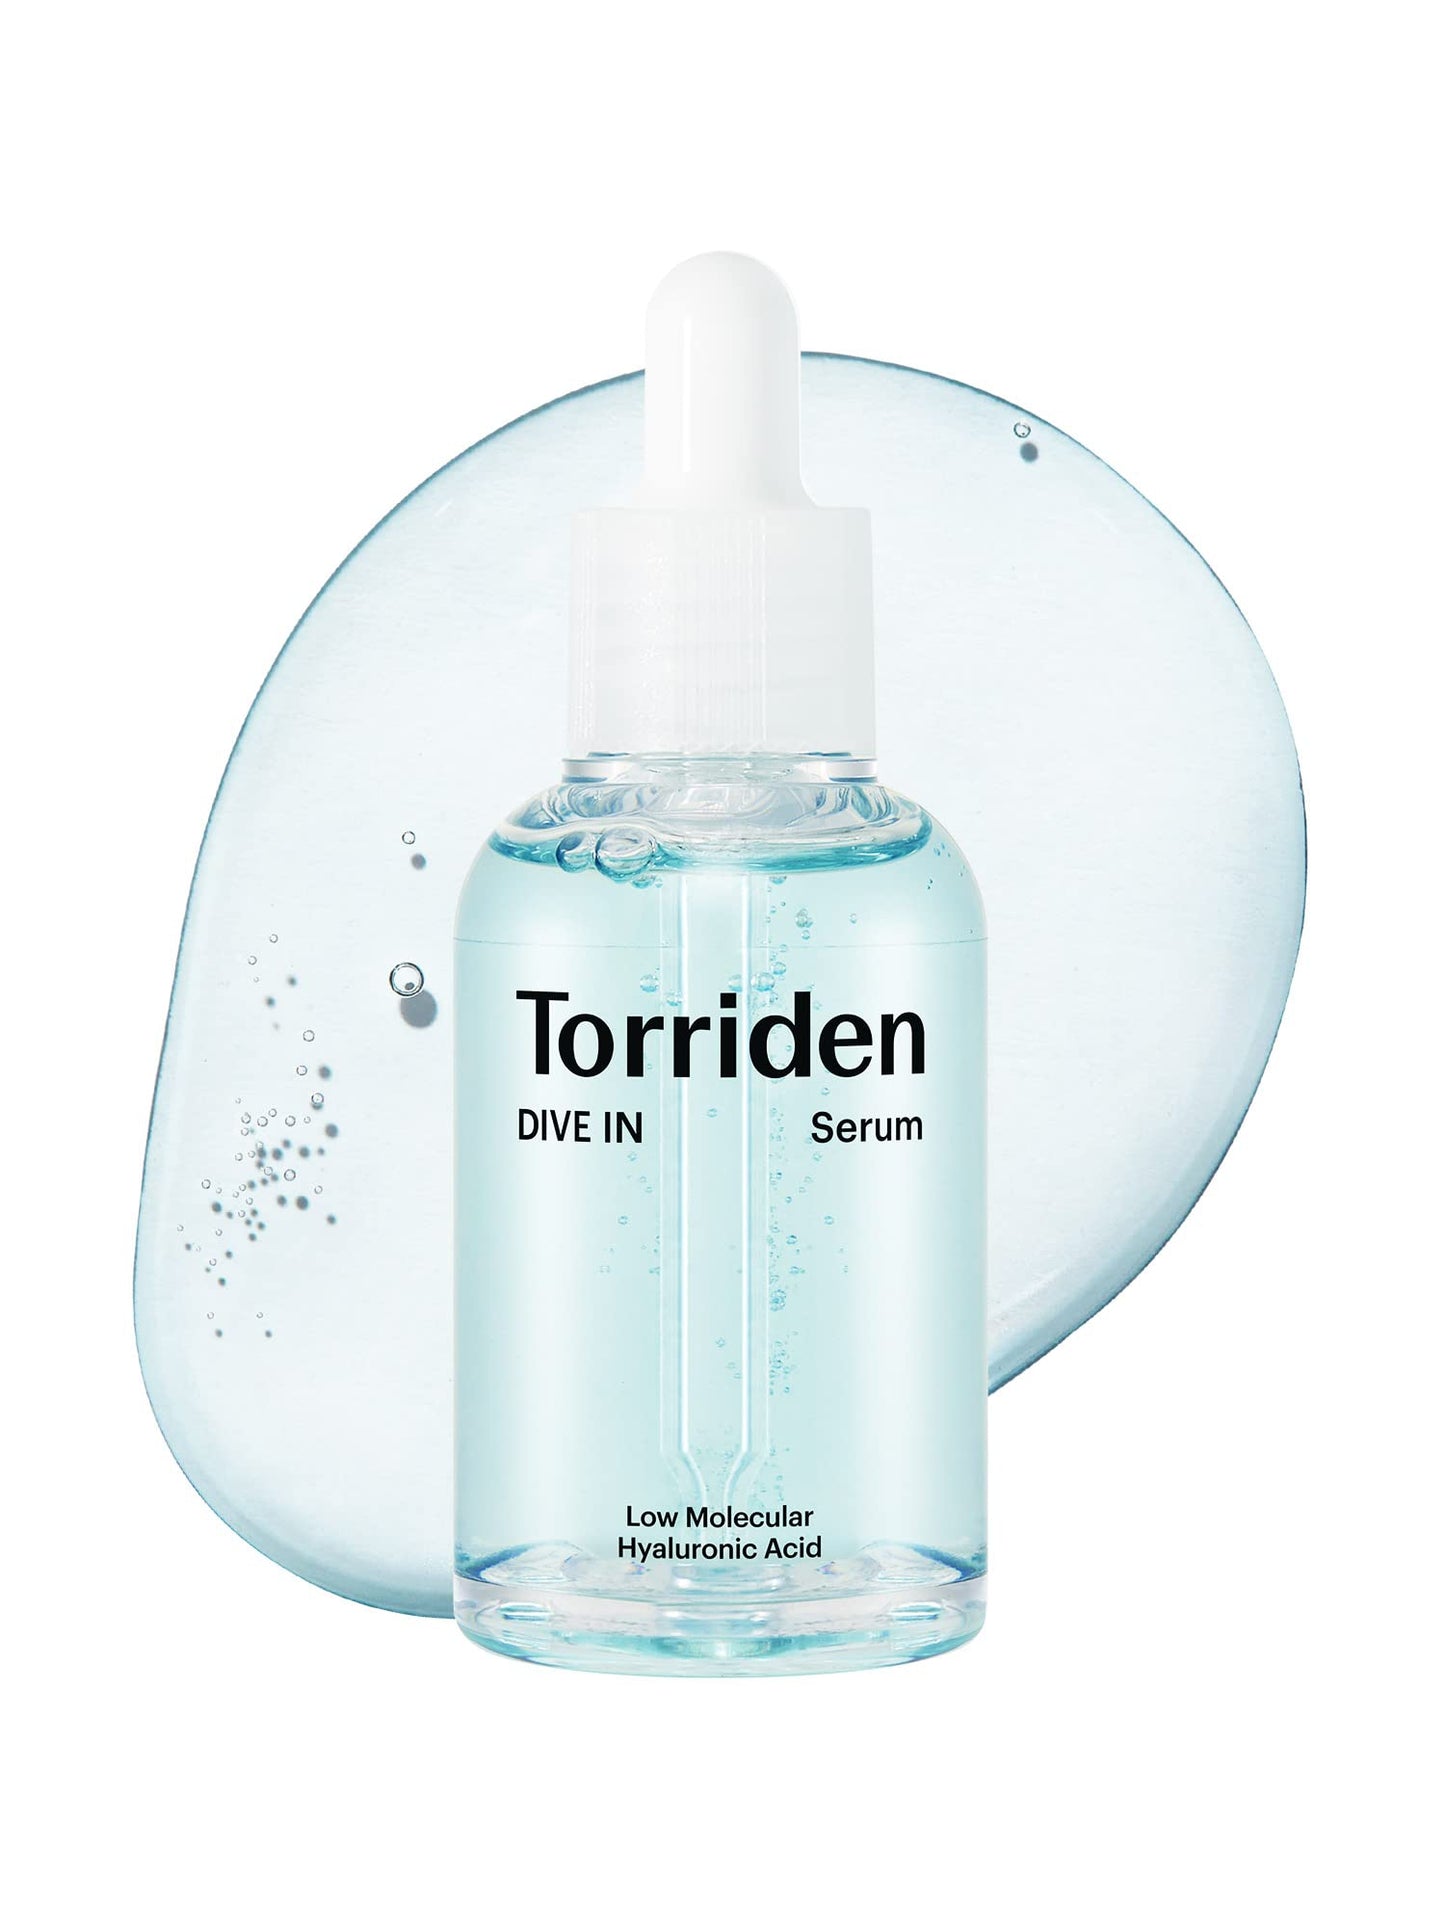 TORRIDEN DIVE-IN Low Molecule Hyaluronic Acid Serum